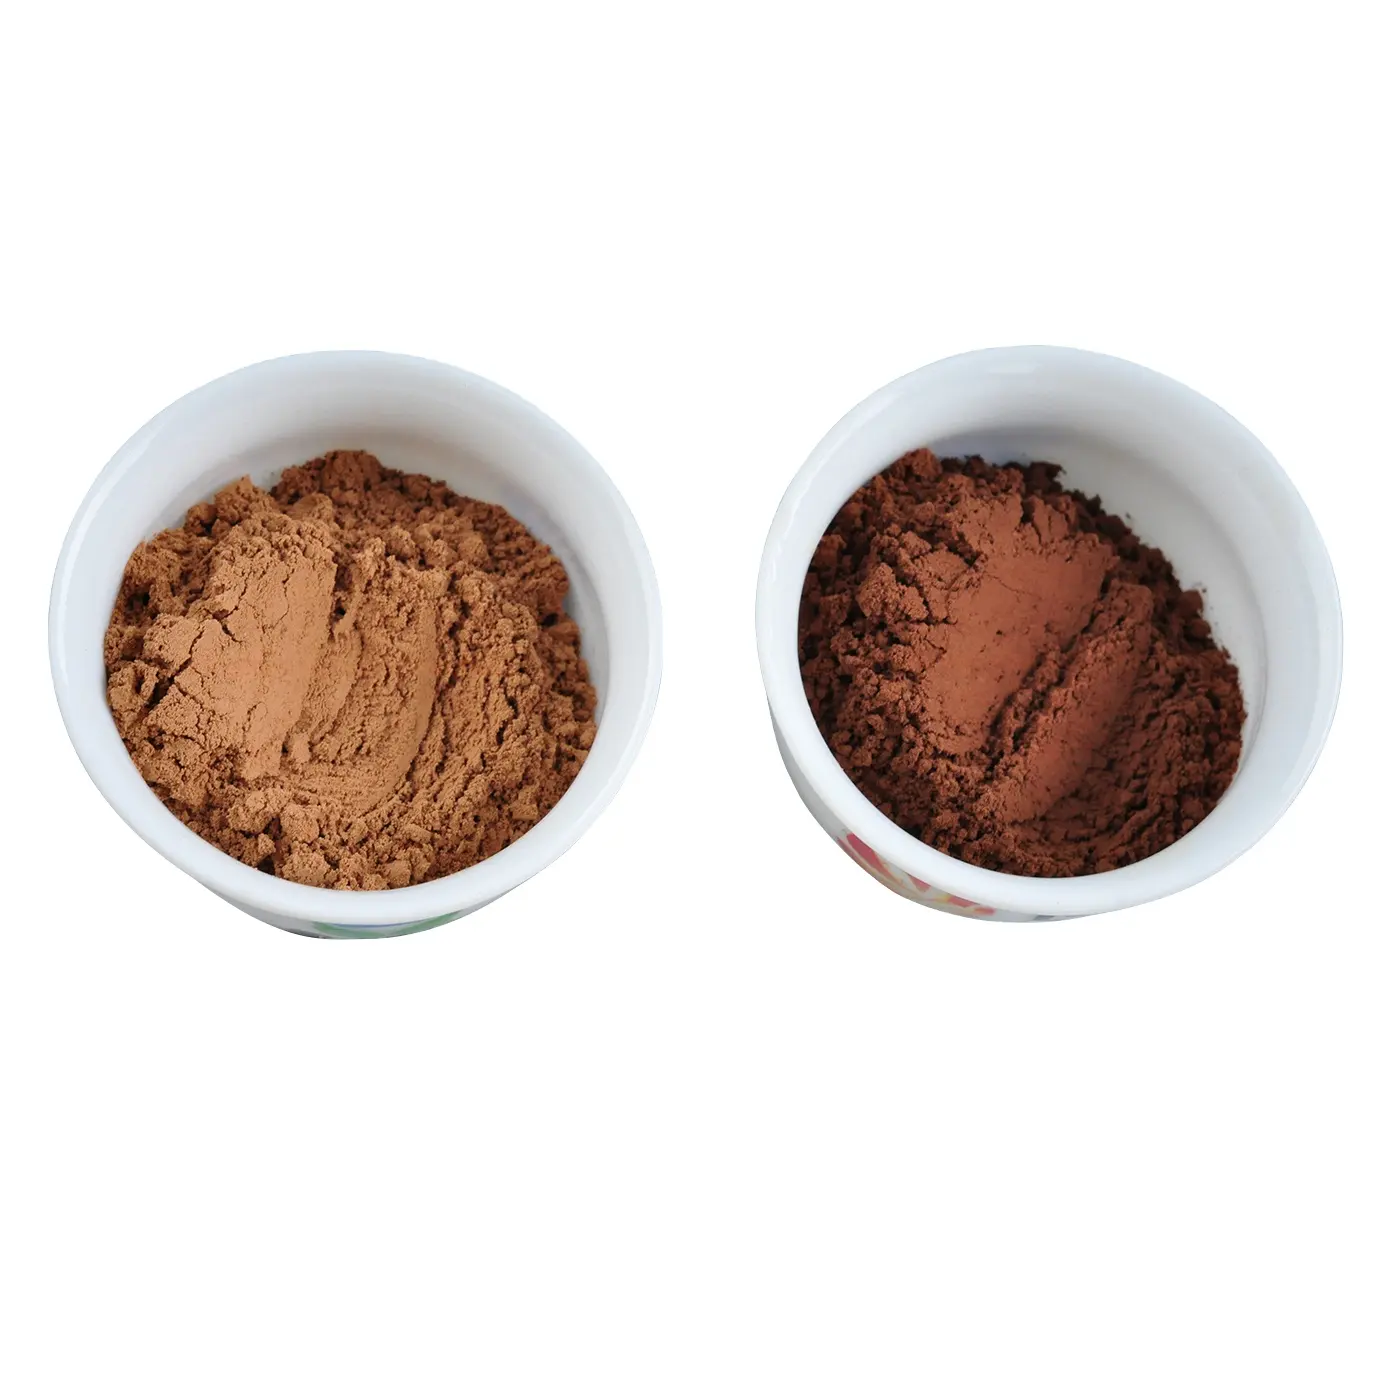 Ingredienti alimentari in polvere di cacao naturale/alcalinizzato per torte al cioccolato